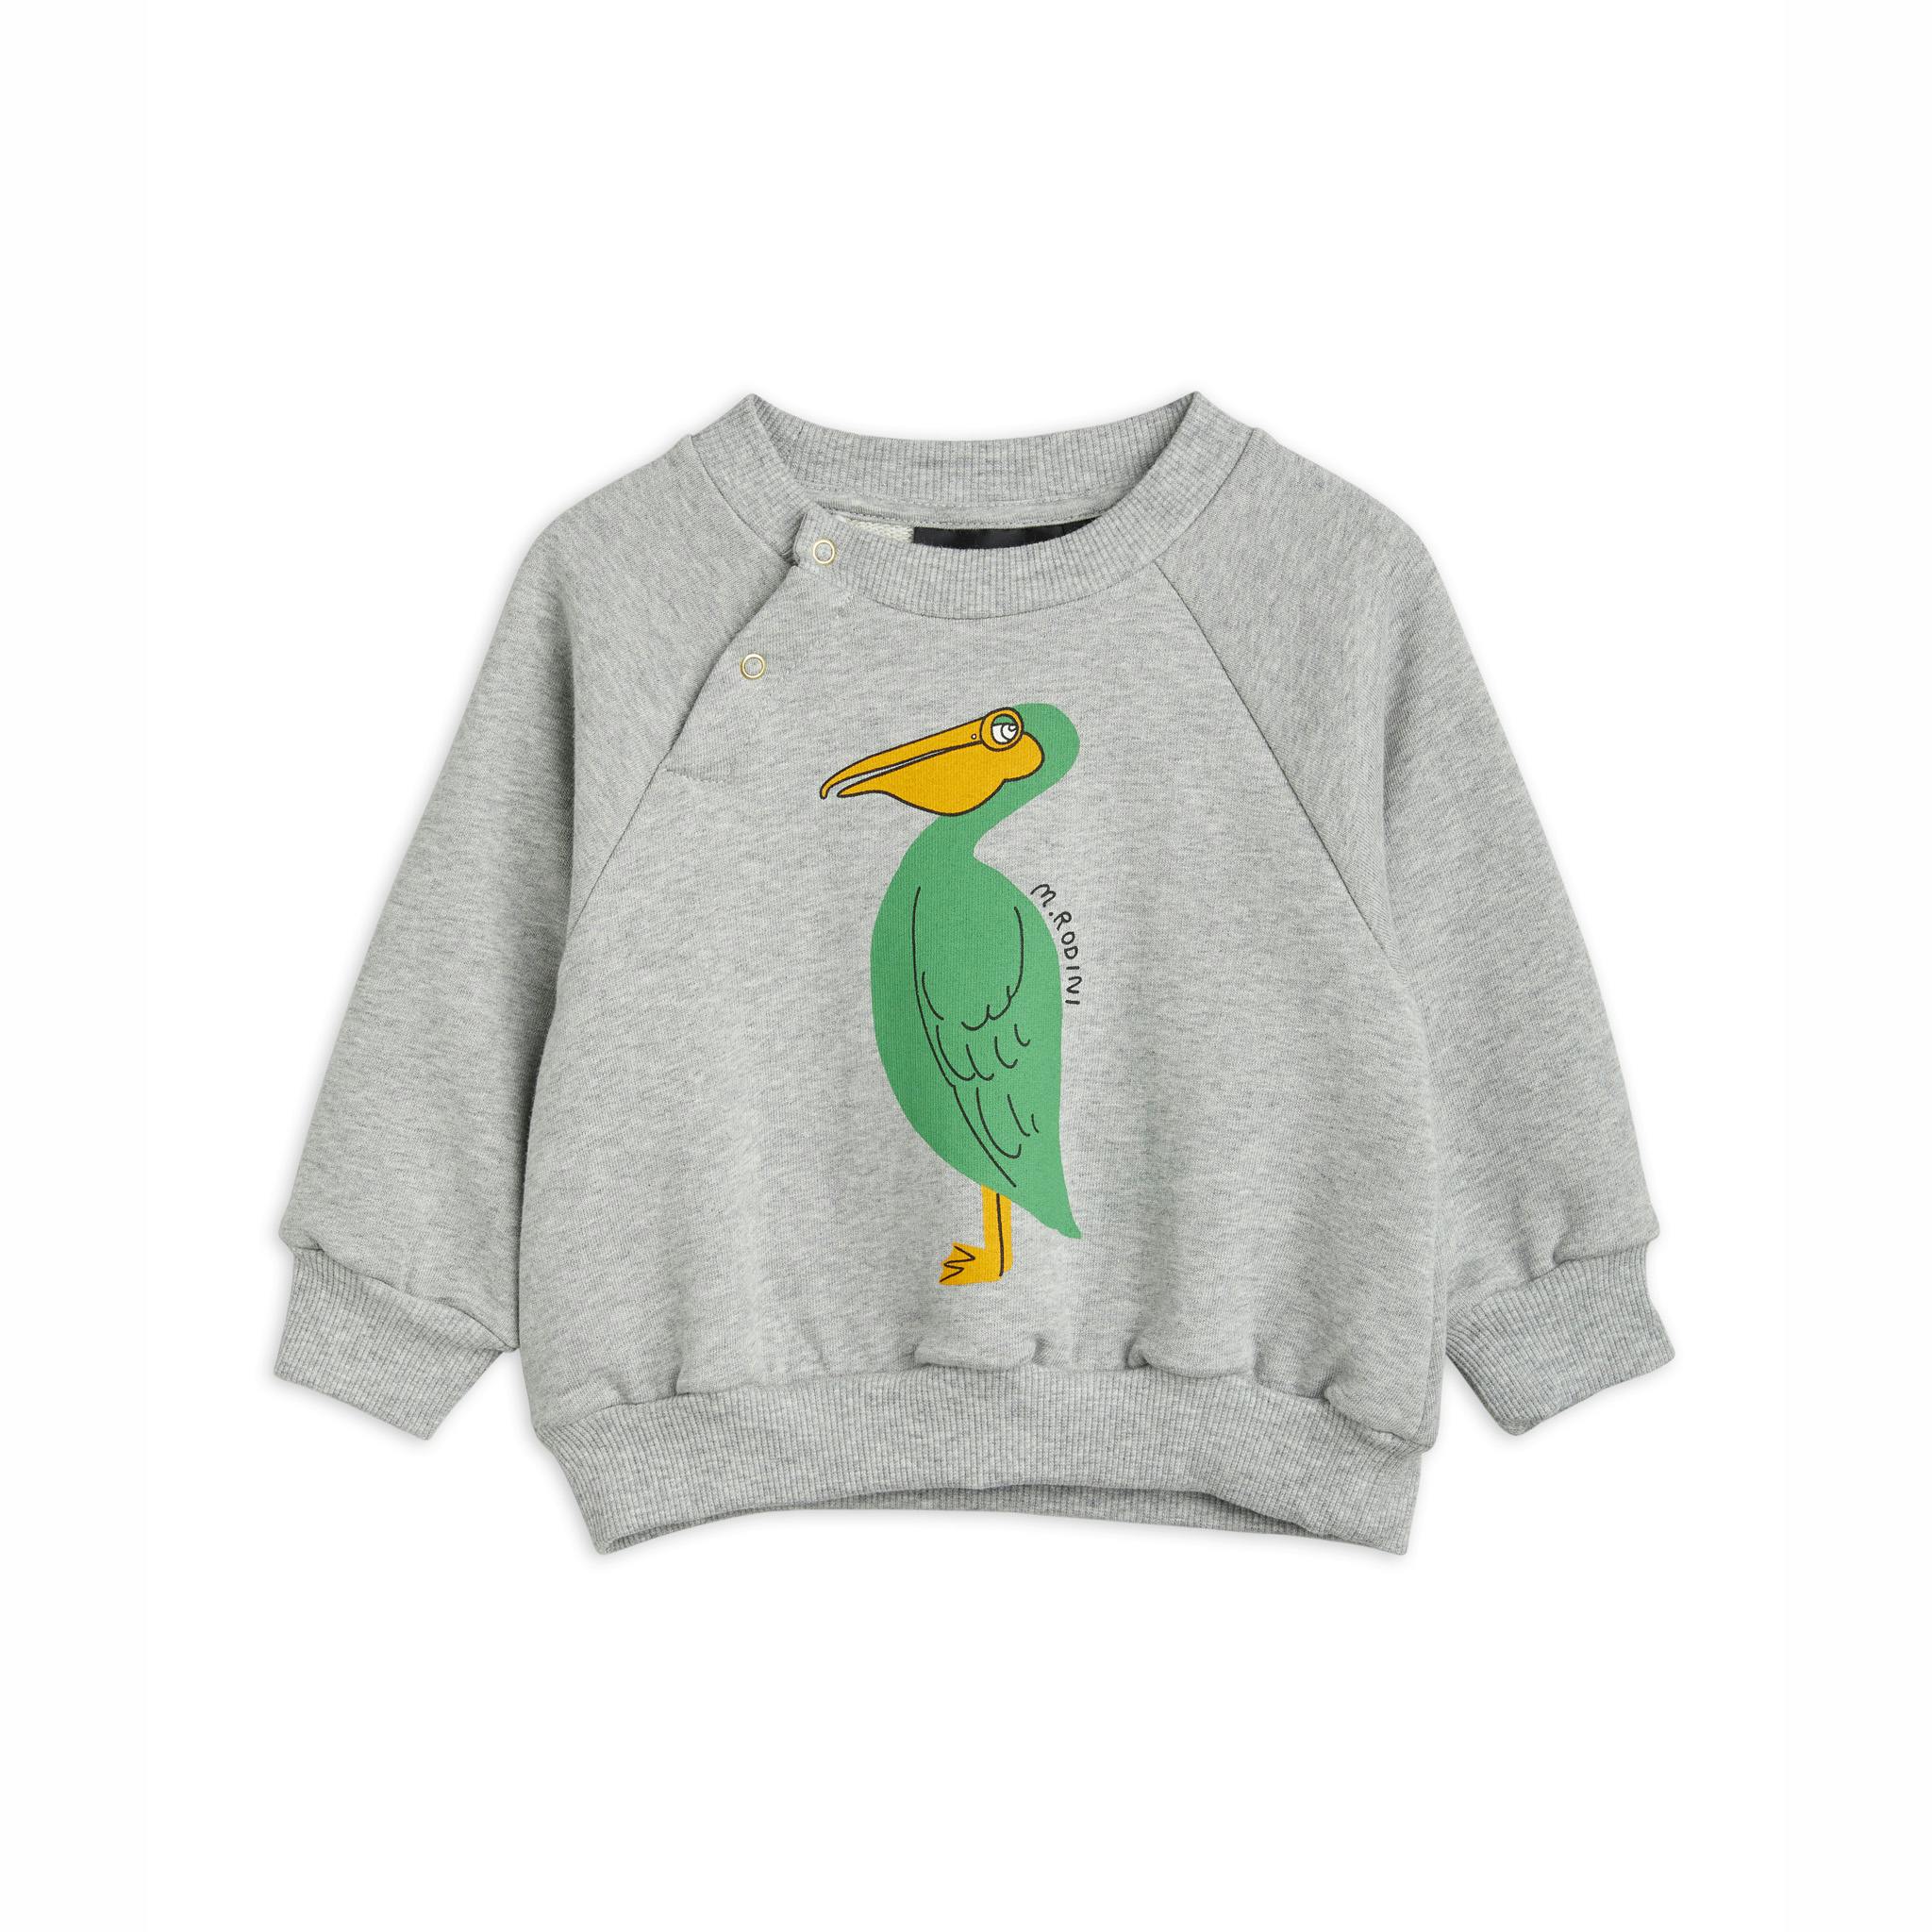 Grå sweatshirt med en grön pelikan på från Mini Rodini.